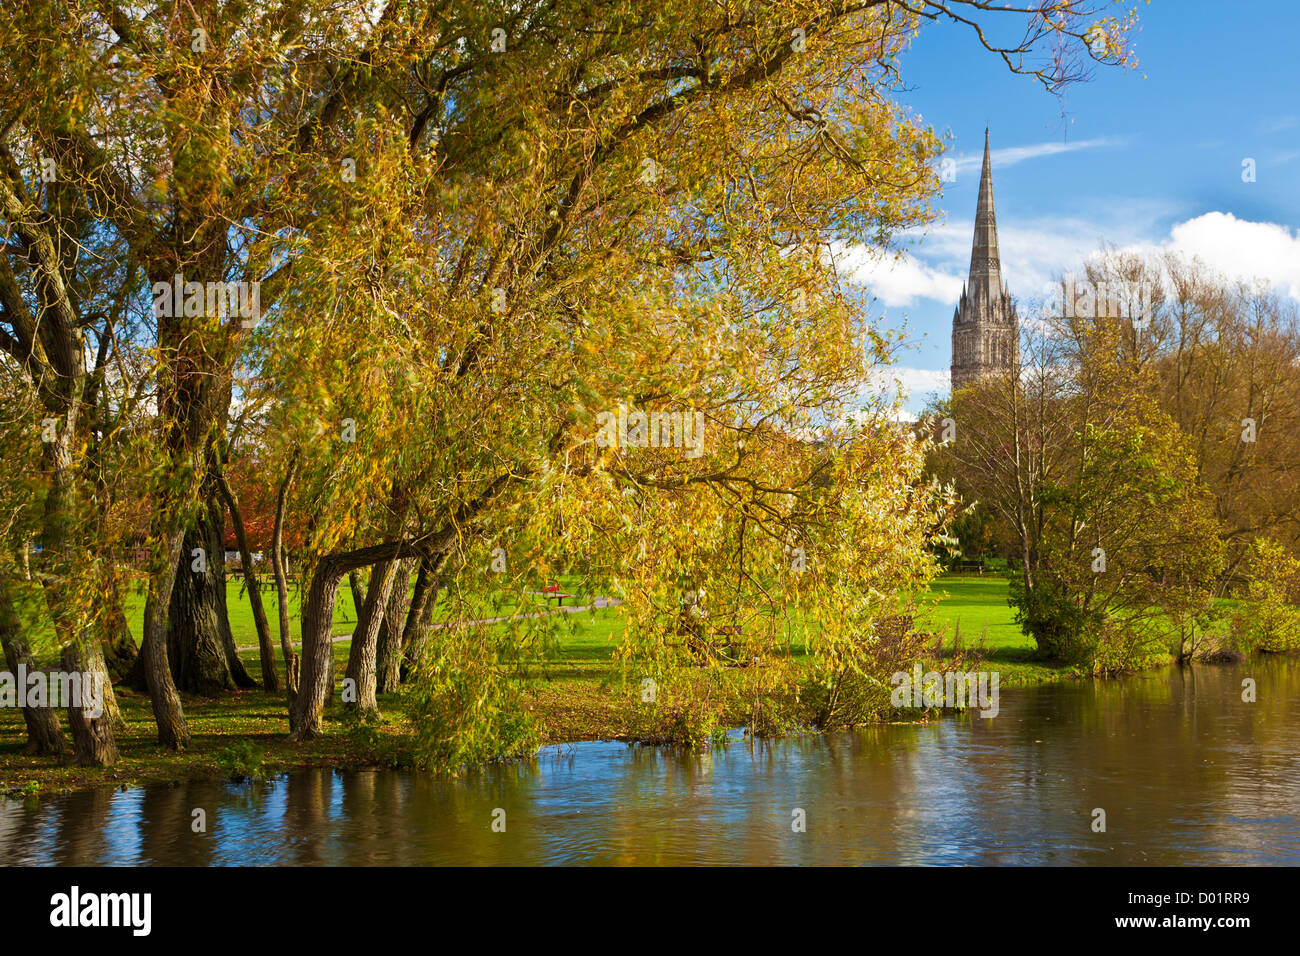 Une vue d'automne de la flèche de la cathédrale de Salisbury, Wiltshire médiévale, England, UK avec la rivière Avon à l'avant-plan. Banque D'Images